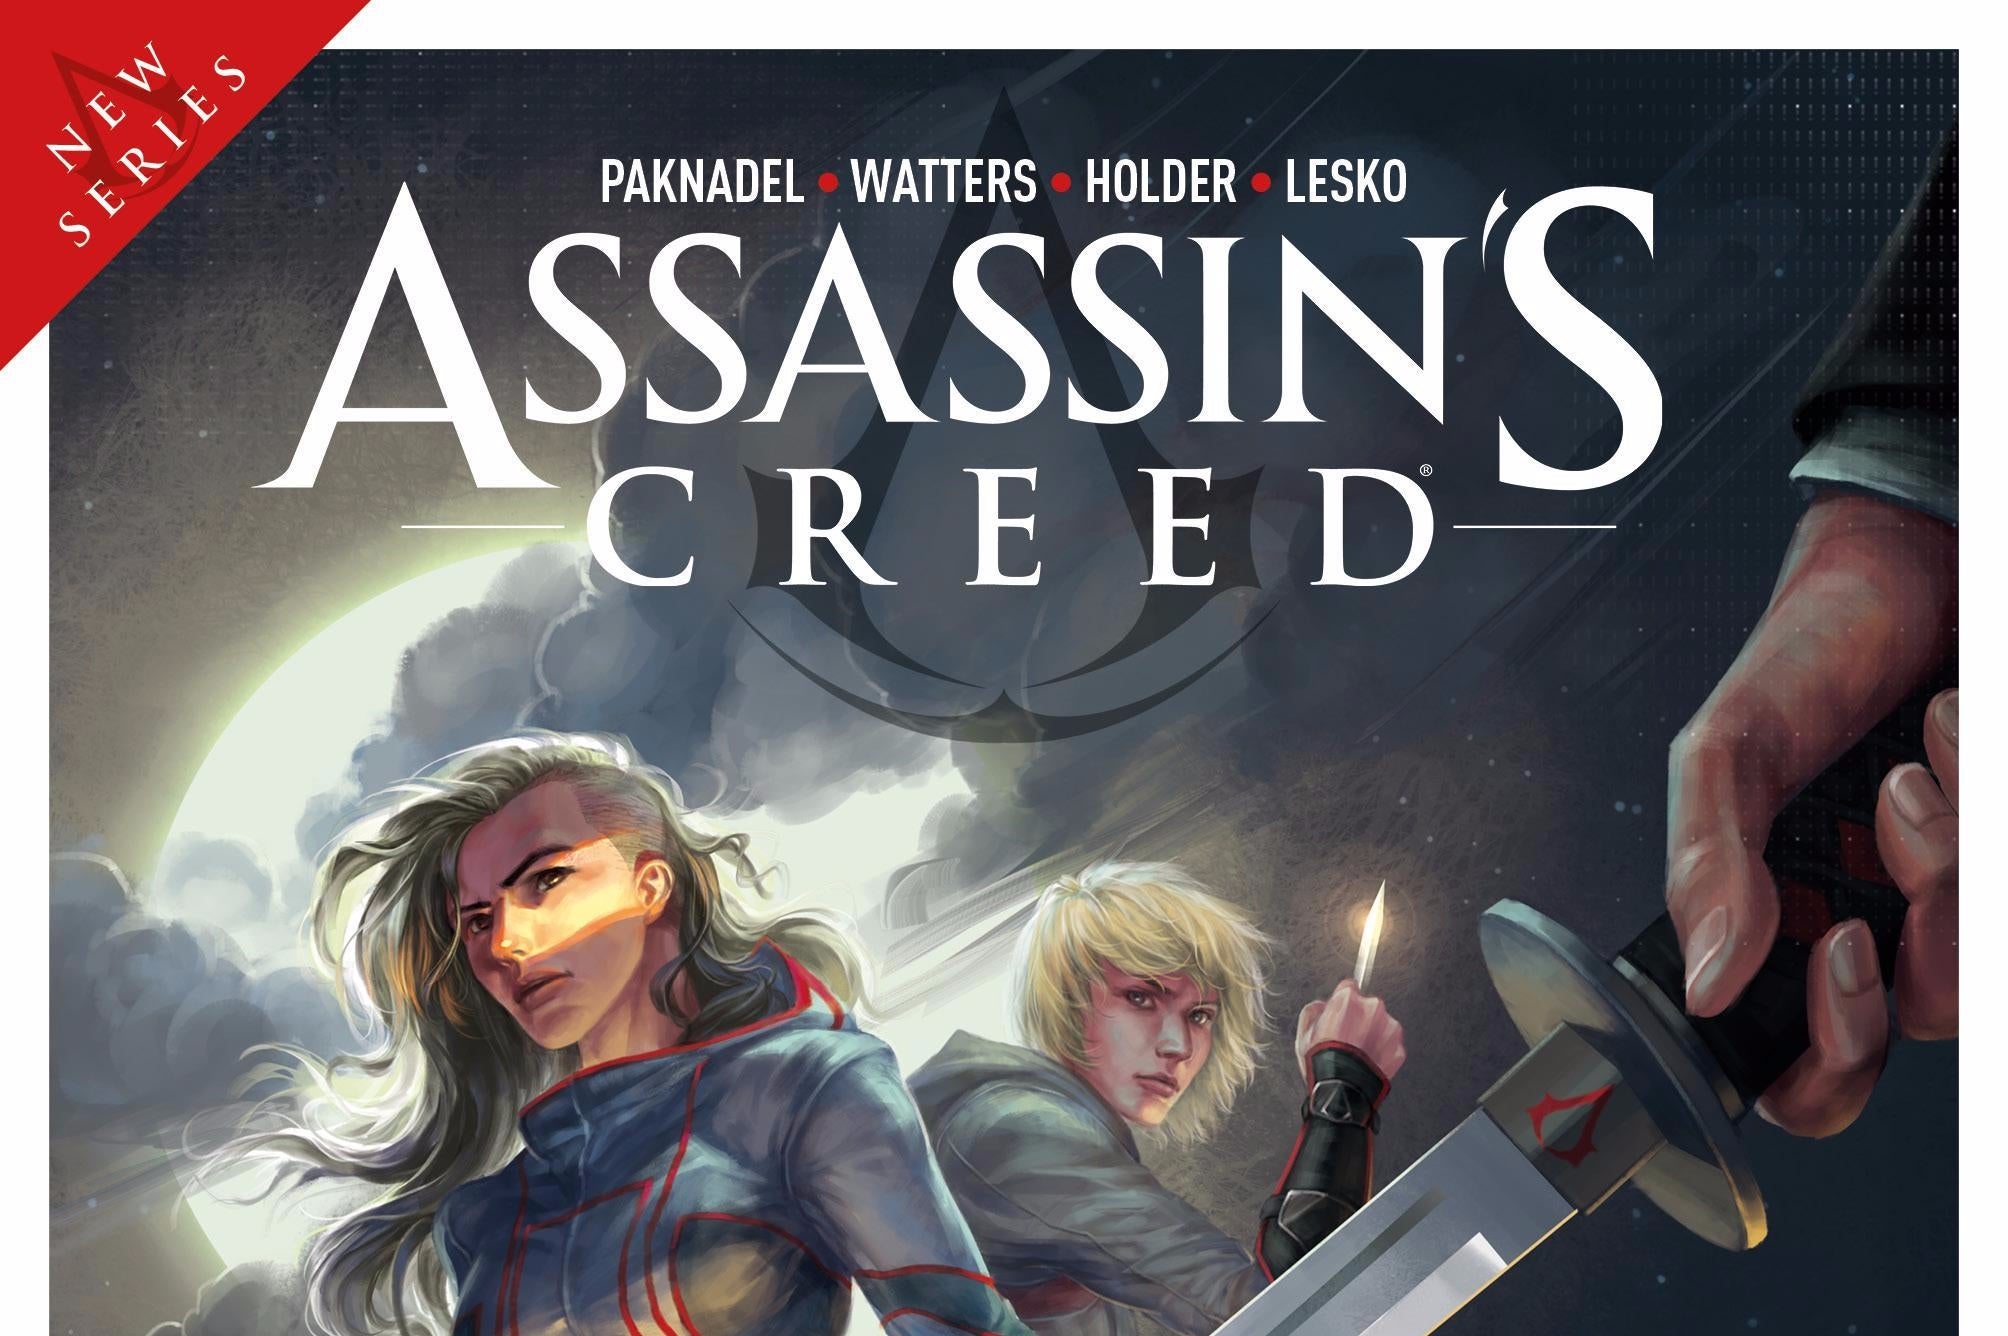 Image for Dokončení důležité dějové linky Assassin's Creed bude v komiksu